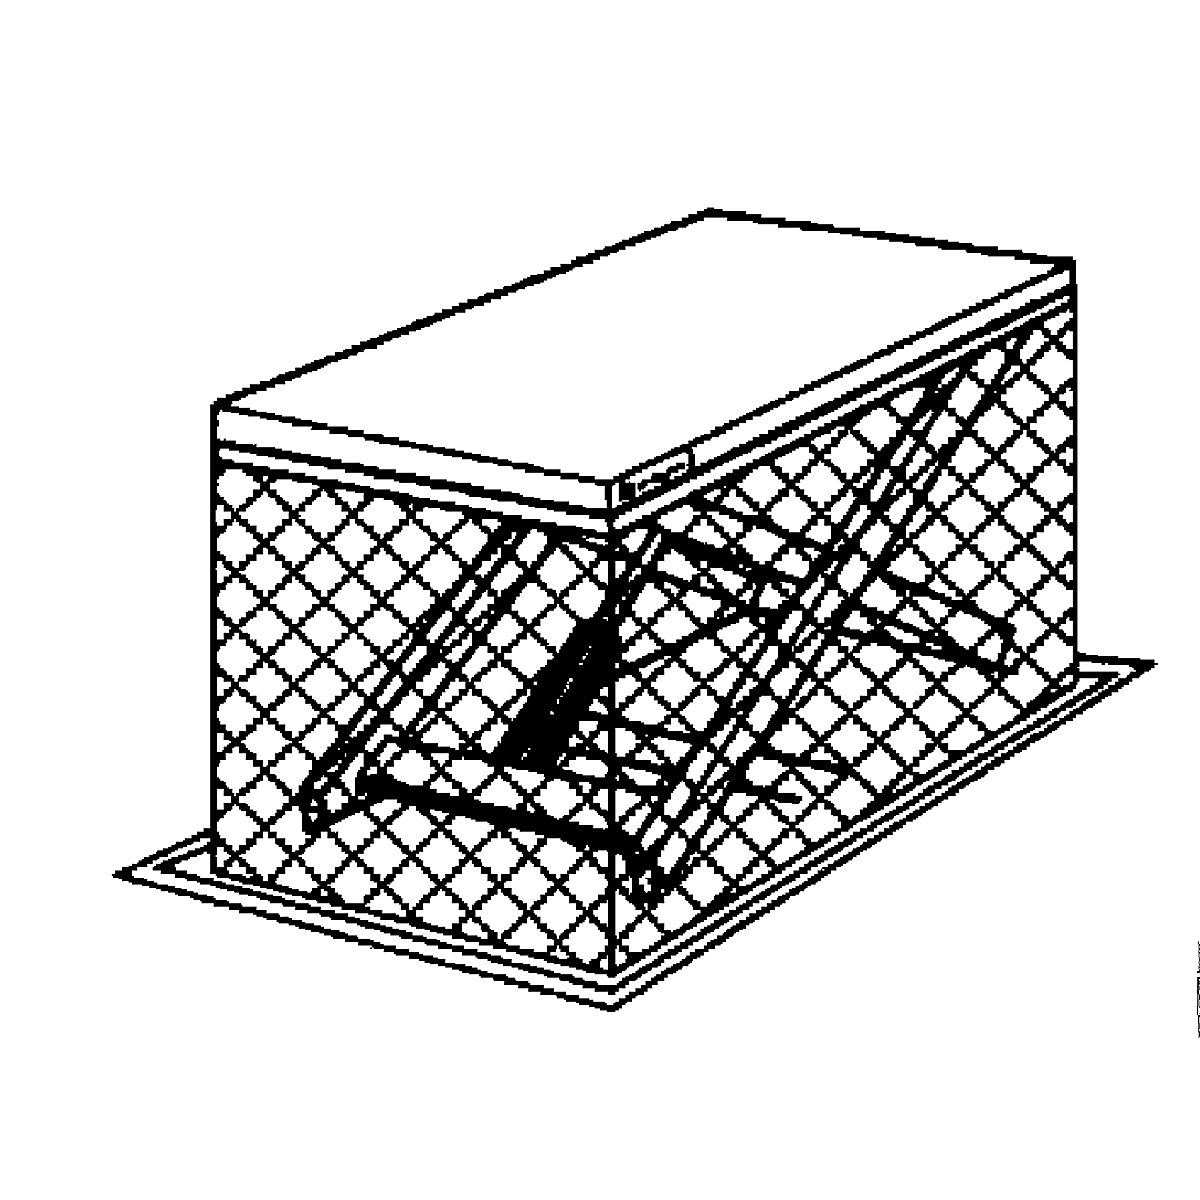 Kompaktowy stół podnośny – Edmolift (Zdjęcie produktu 11)-10